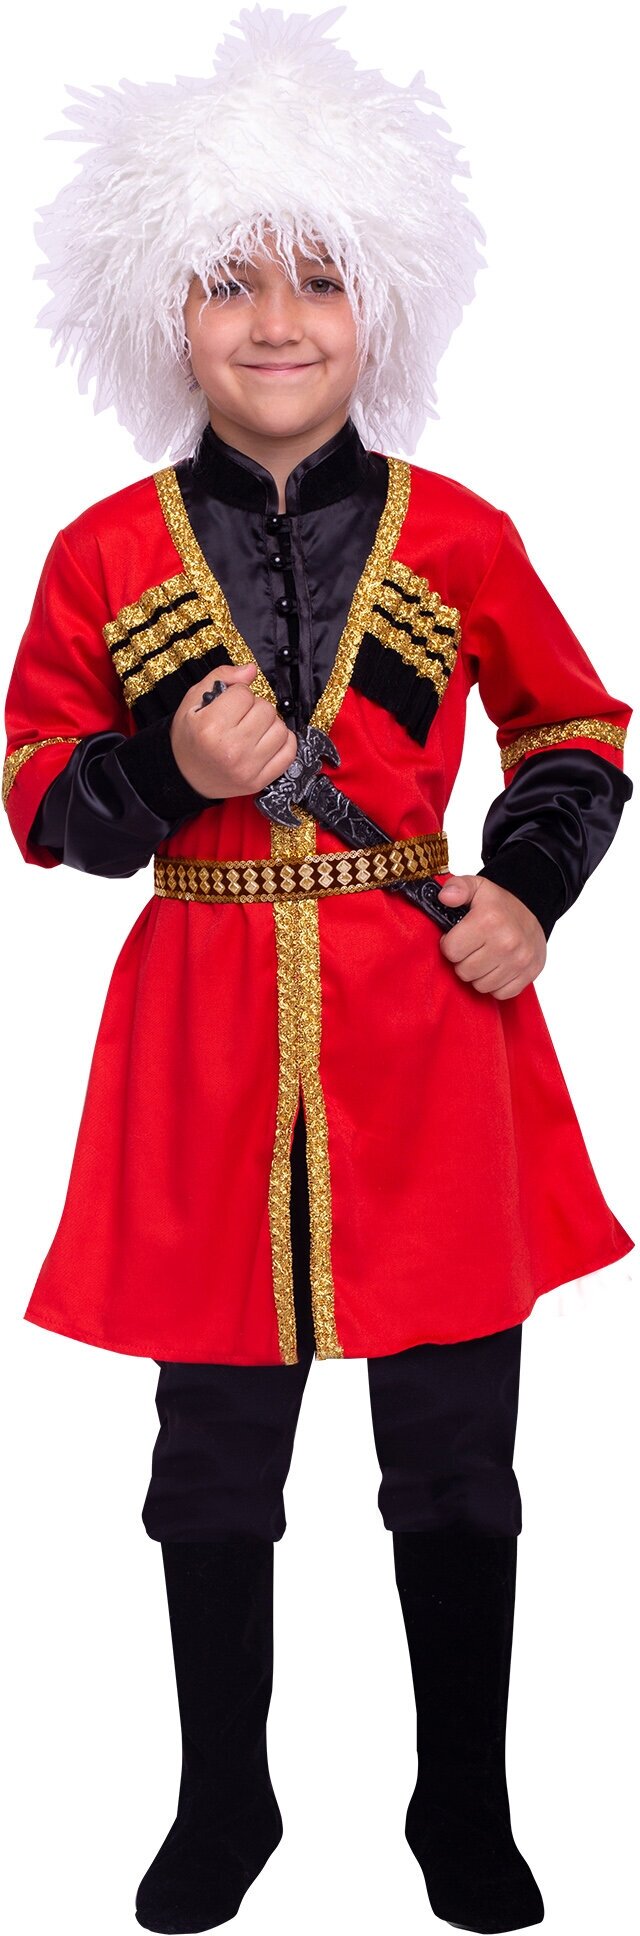 Кавказский национальный костюм (2132 к-22), размер 122, цвет мультиколор, бренд Пуговка